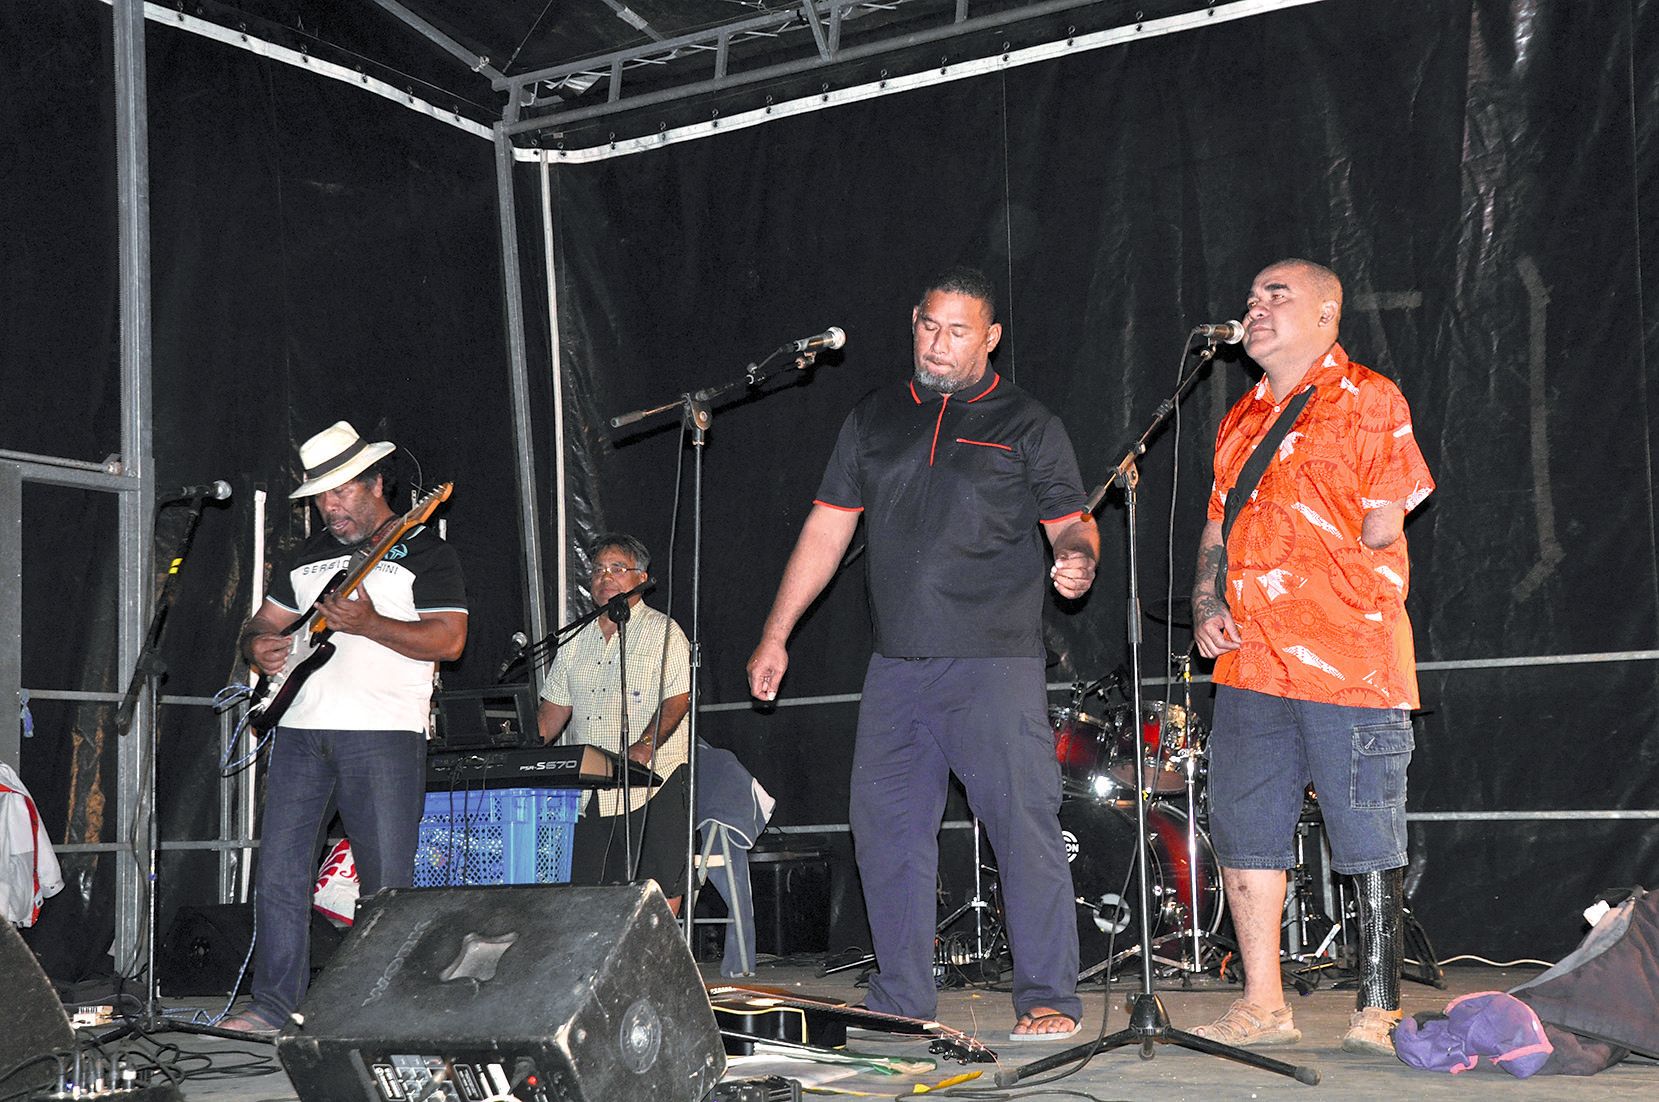 Parmi les groupes locaux et invités qui ont assuré l’animation musicale, ces Wallisiens ont investi le podium vendredi soir avec des morceaux traditionnels et rock’n’roll.